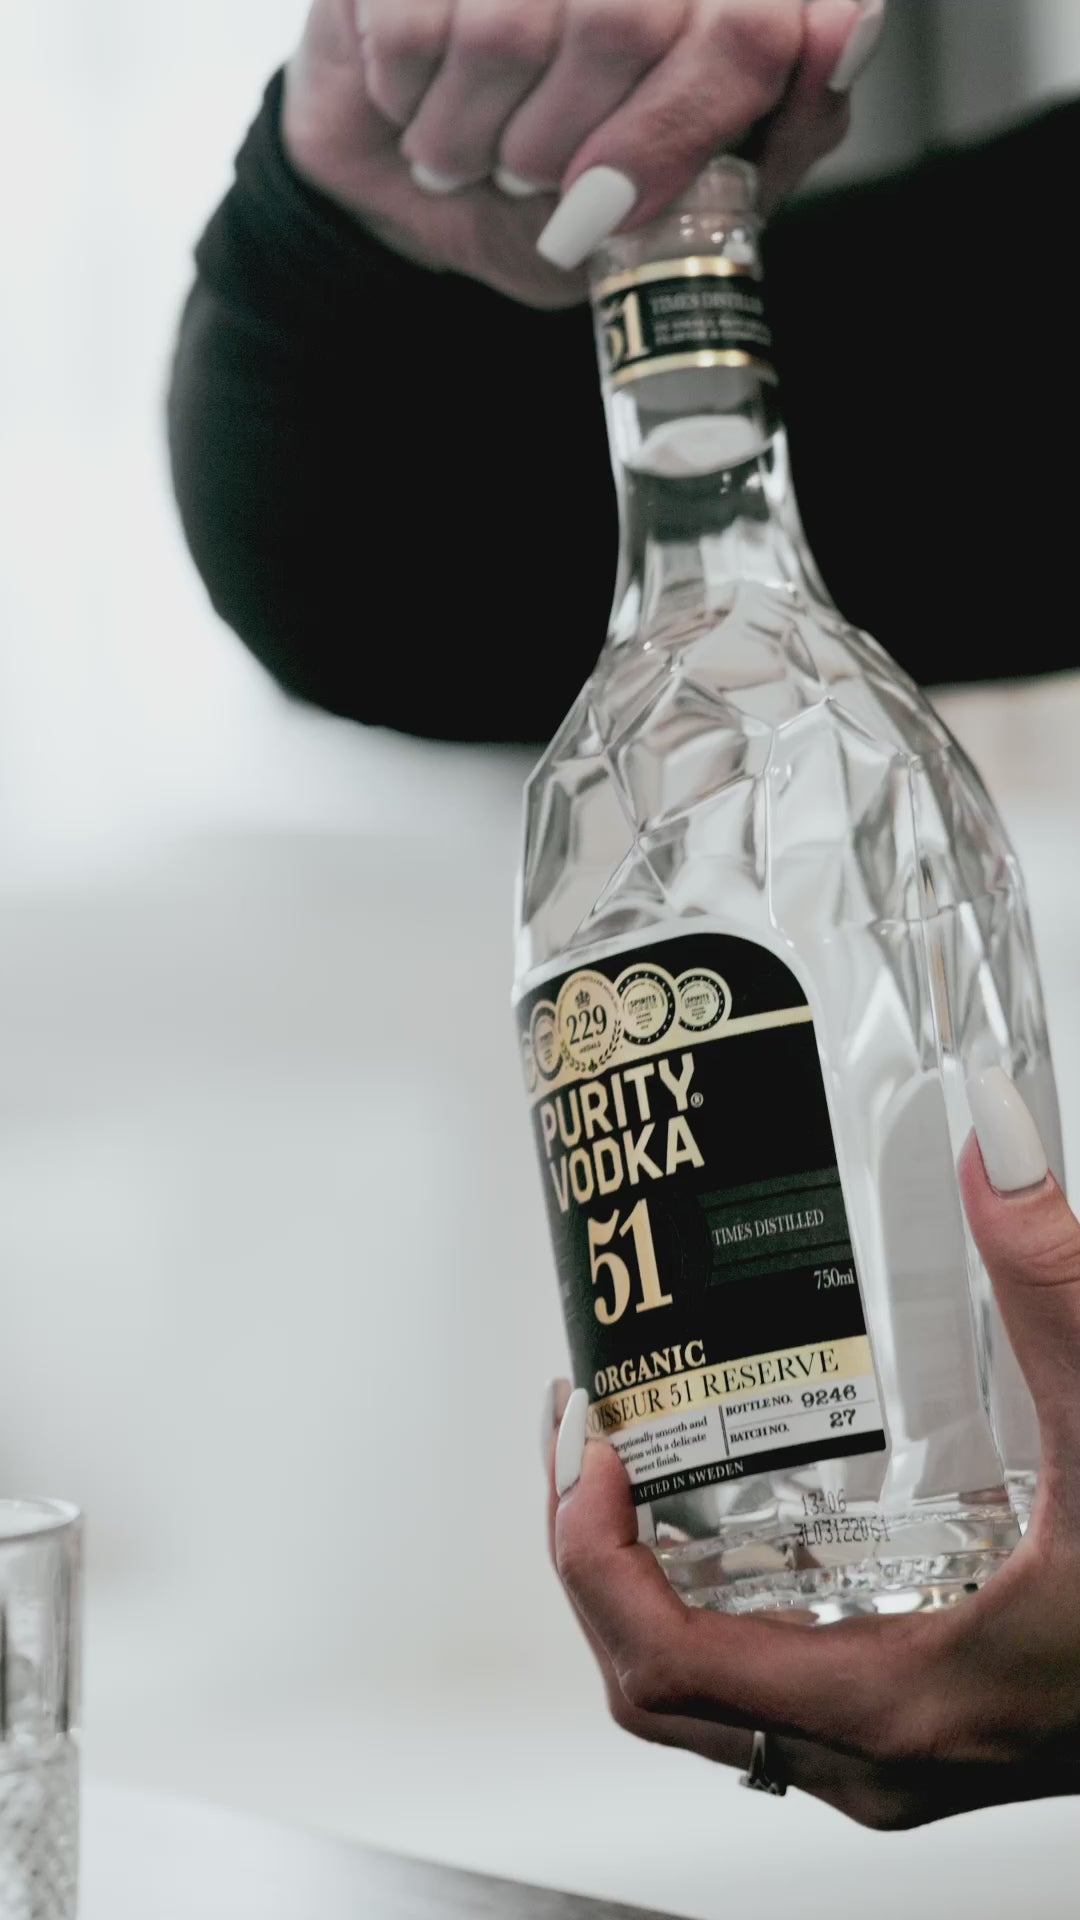 Purity Vodka Connoisseur 51 Réserve 1750 ml